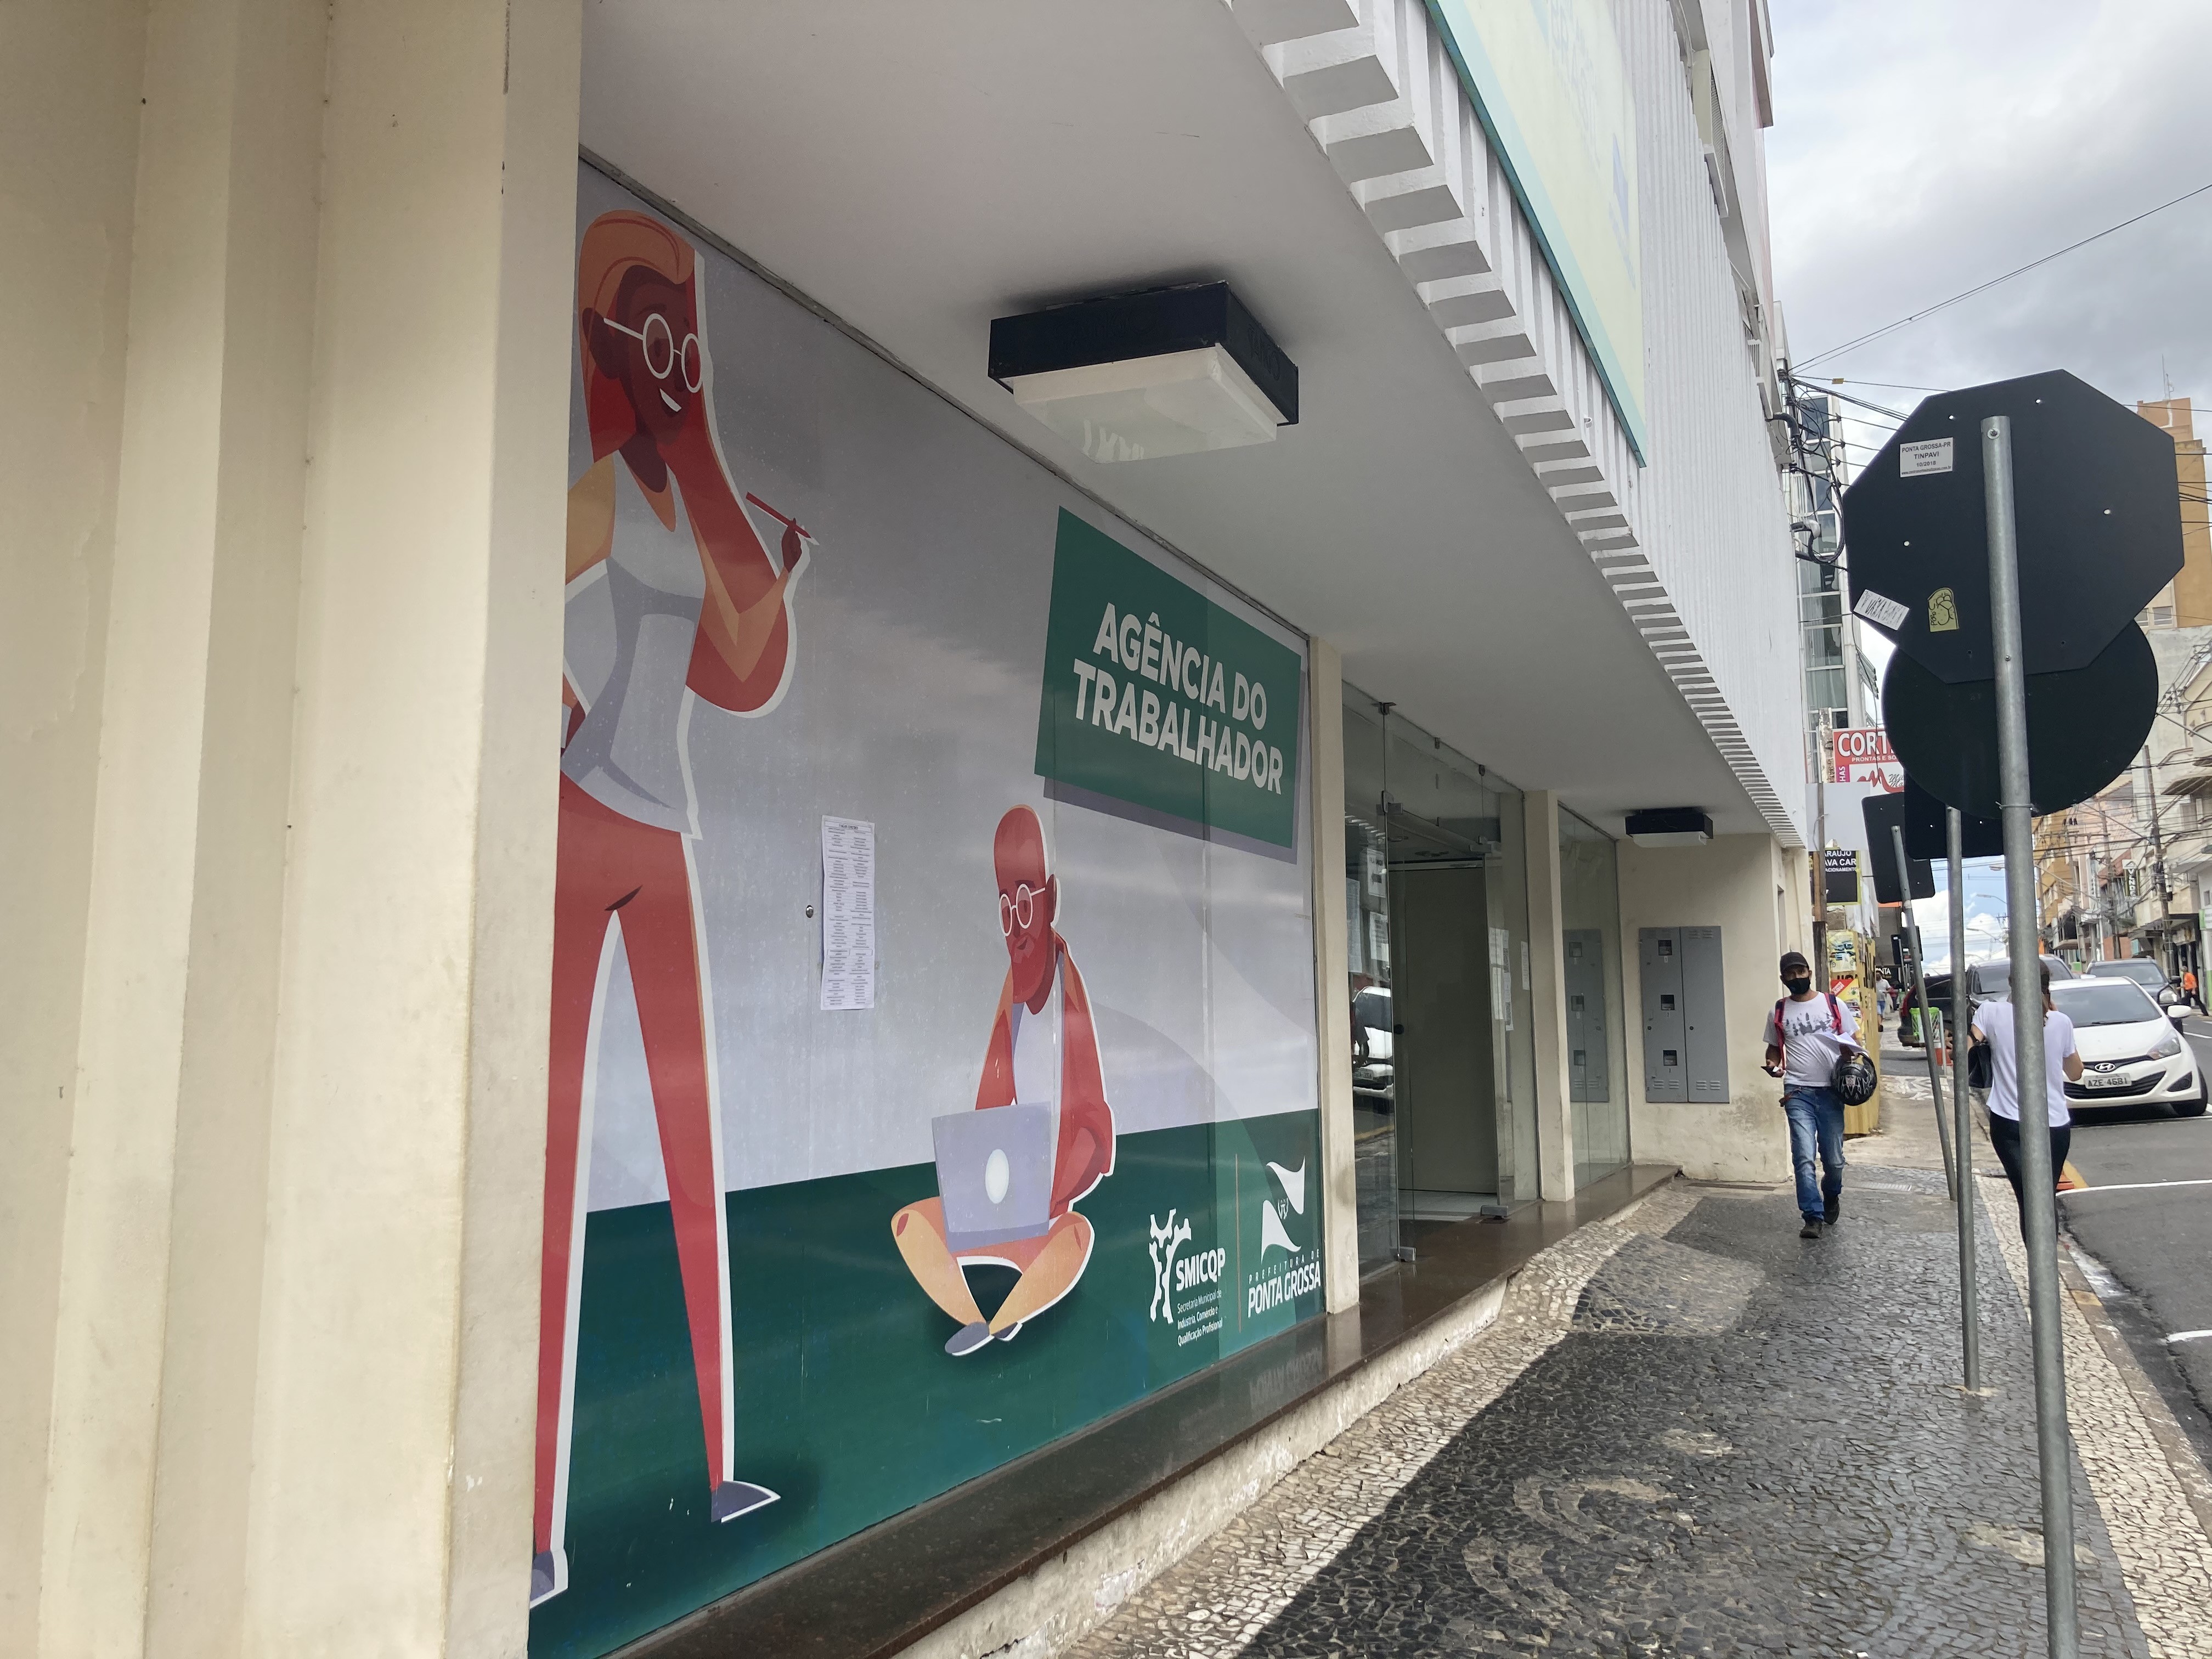 Emprego em Ponta Grossa e região: veja vagas disponíveis e áreas com mais oportunidades em maio